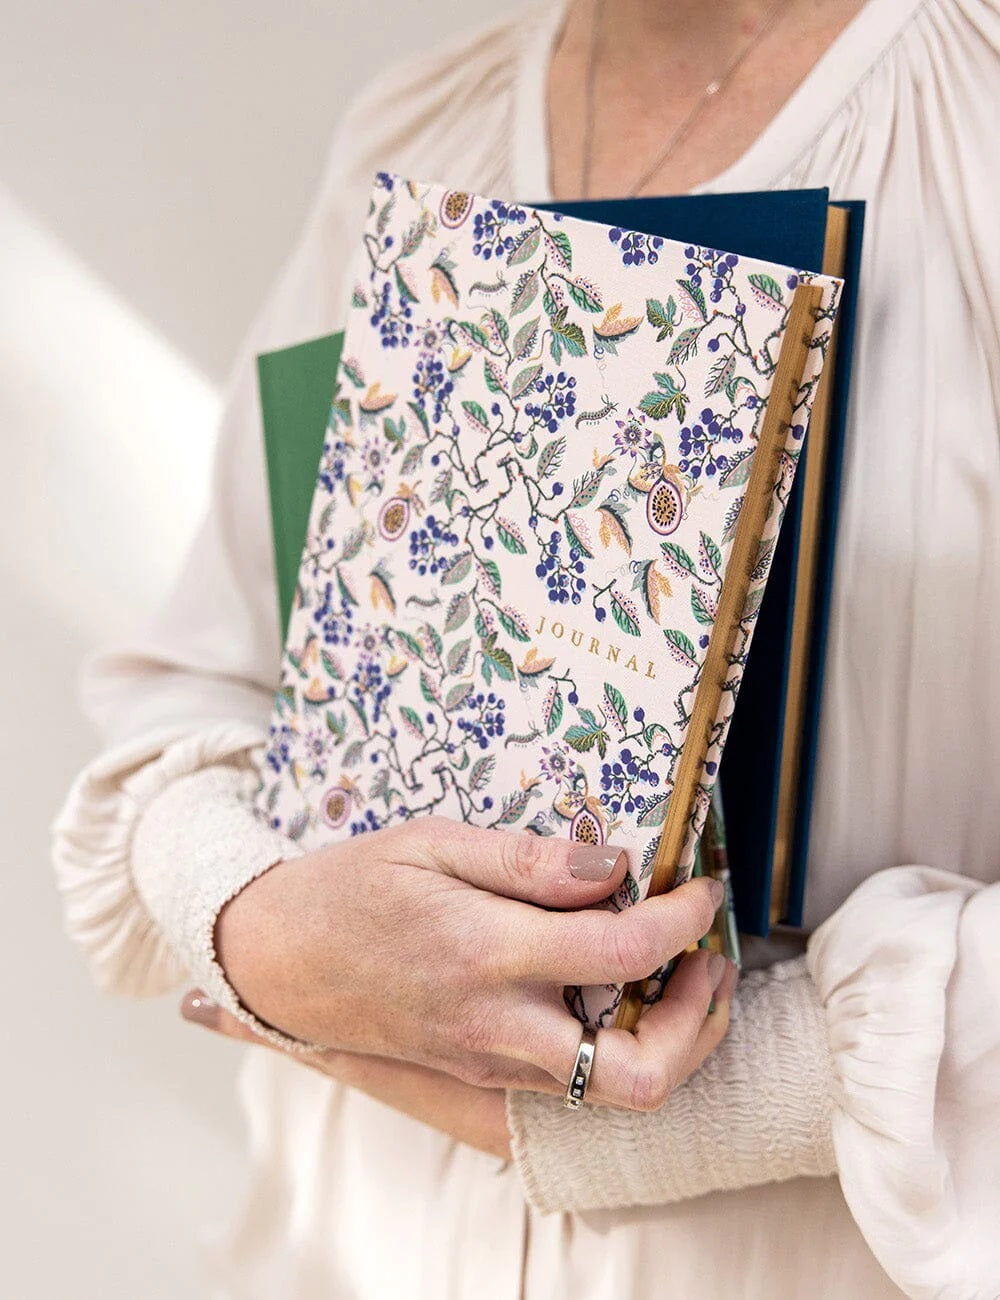 linen bound journal